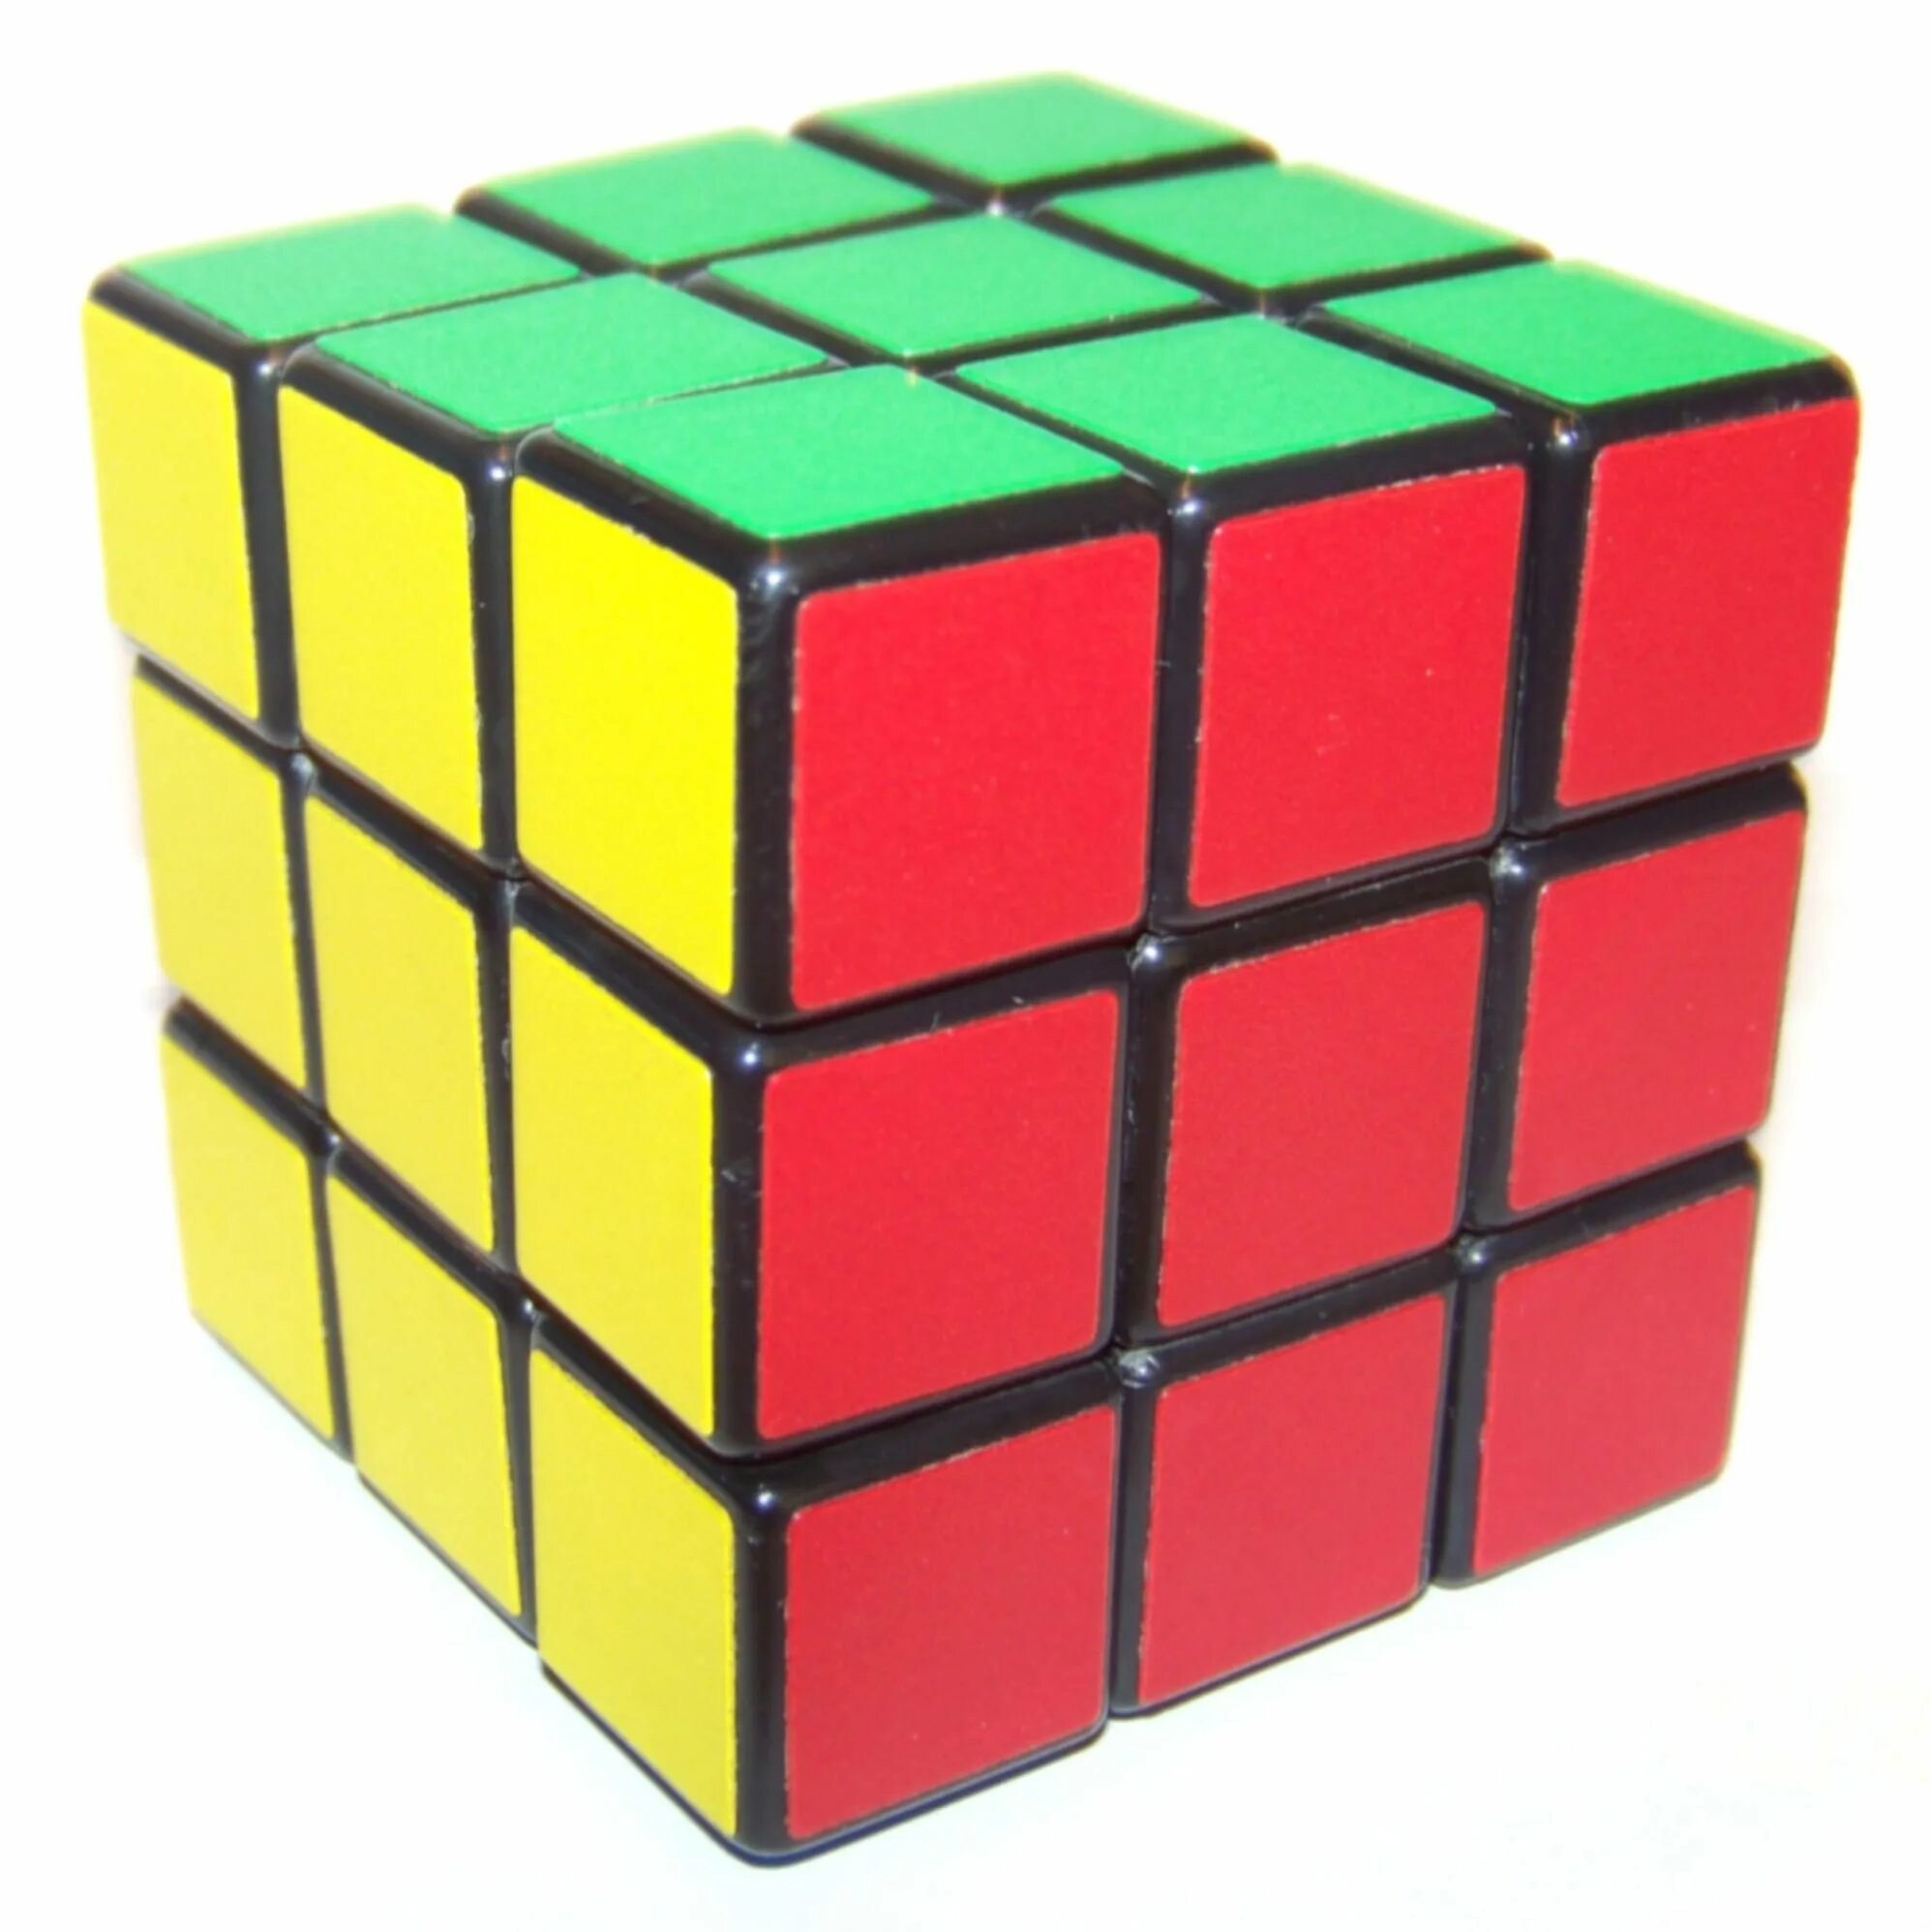 Предметы кубической формы